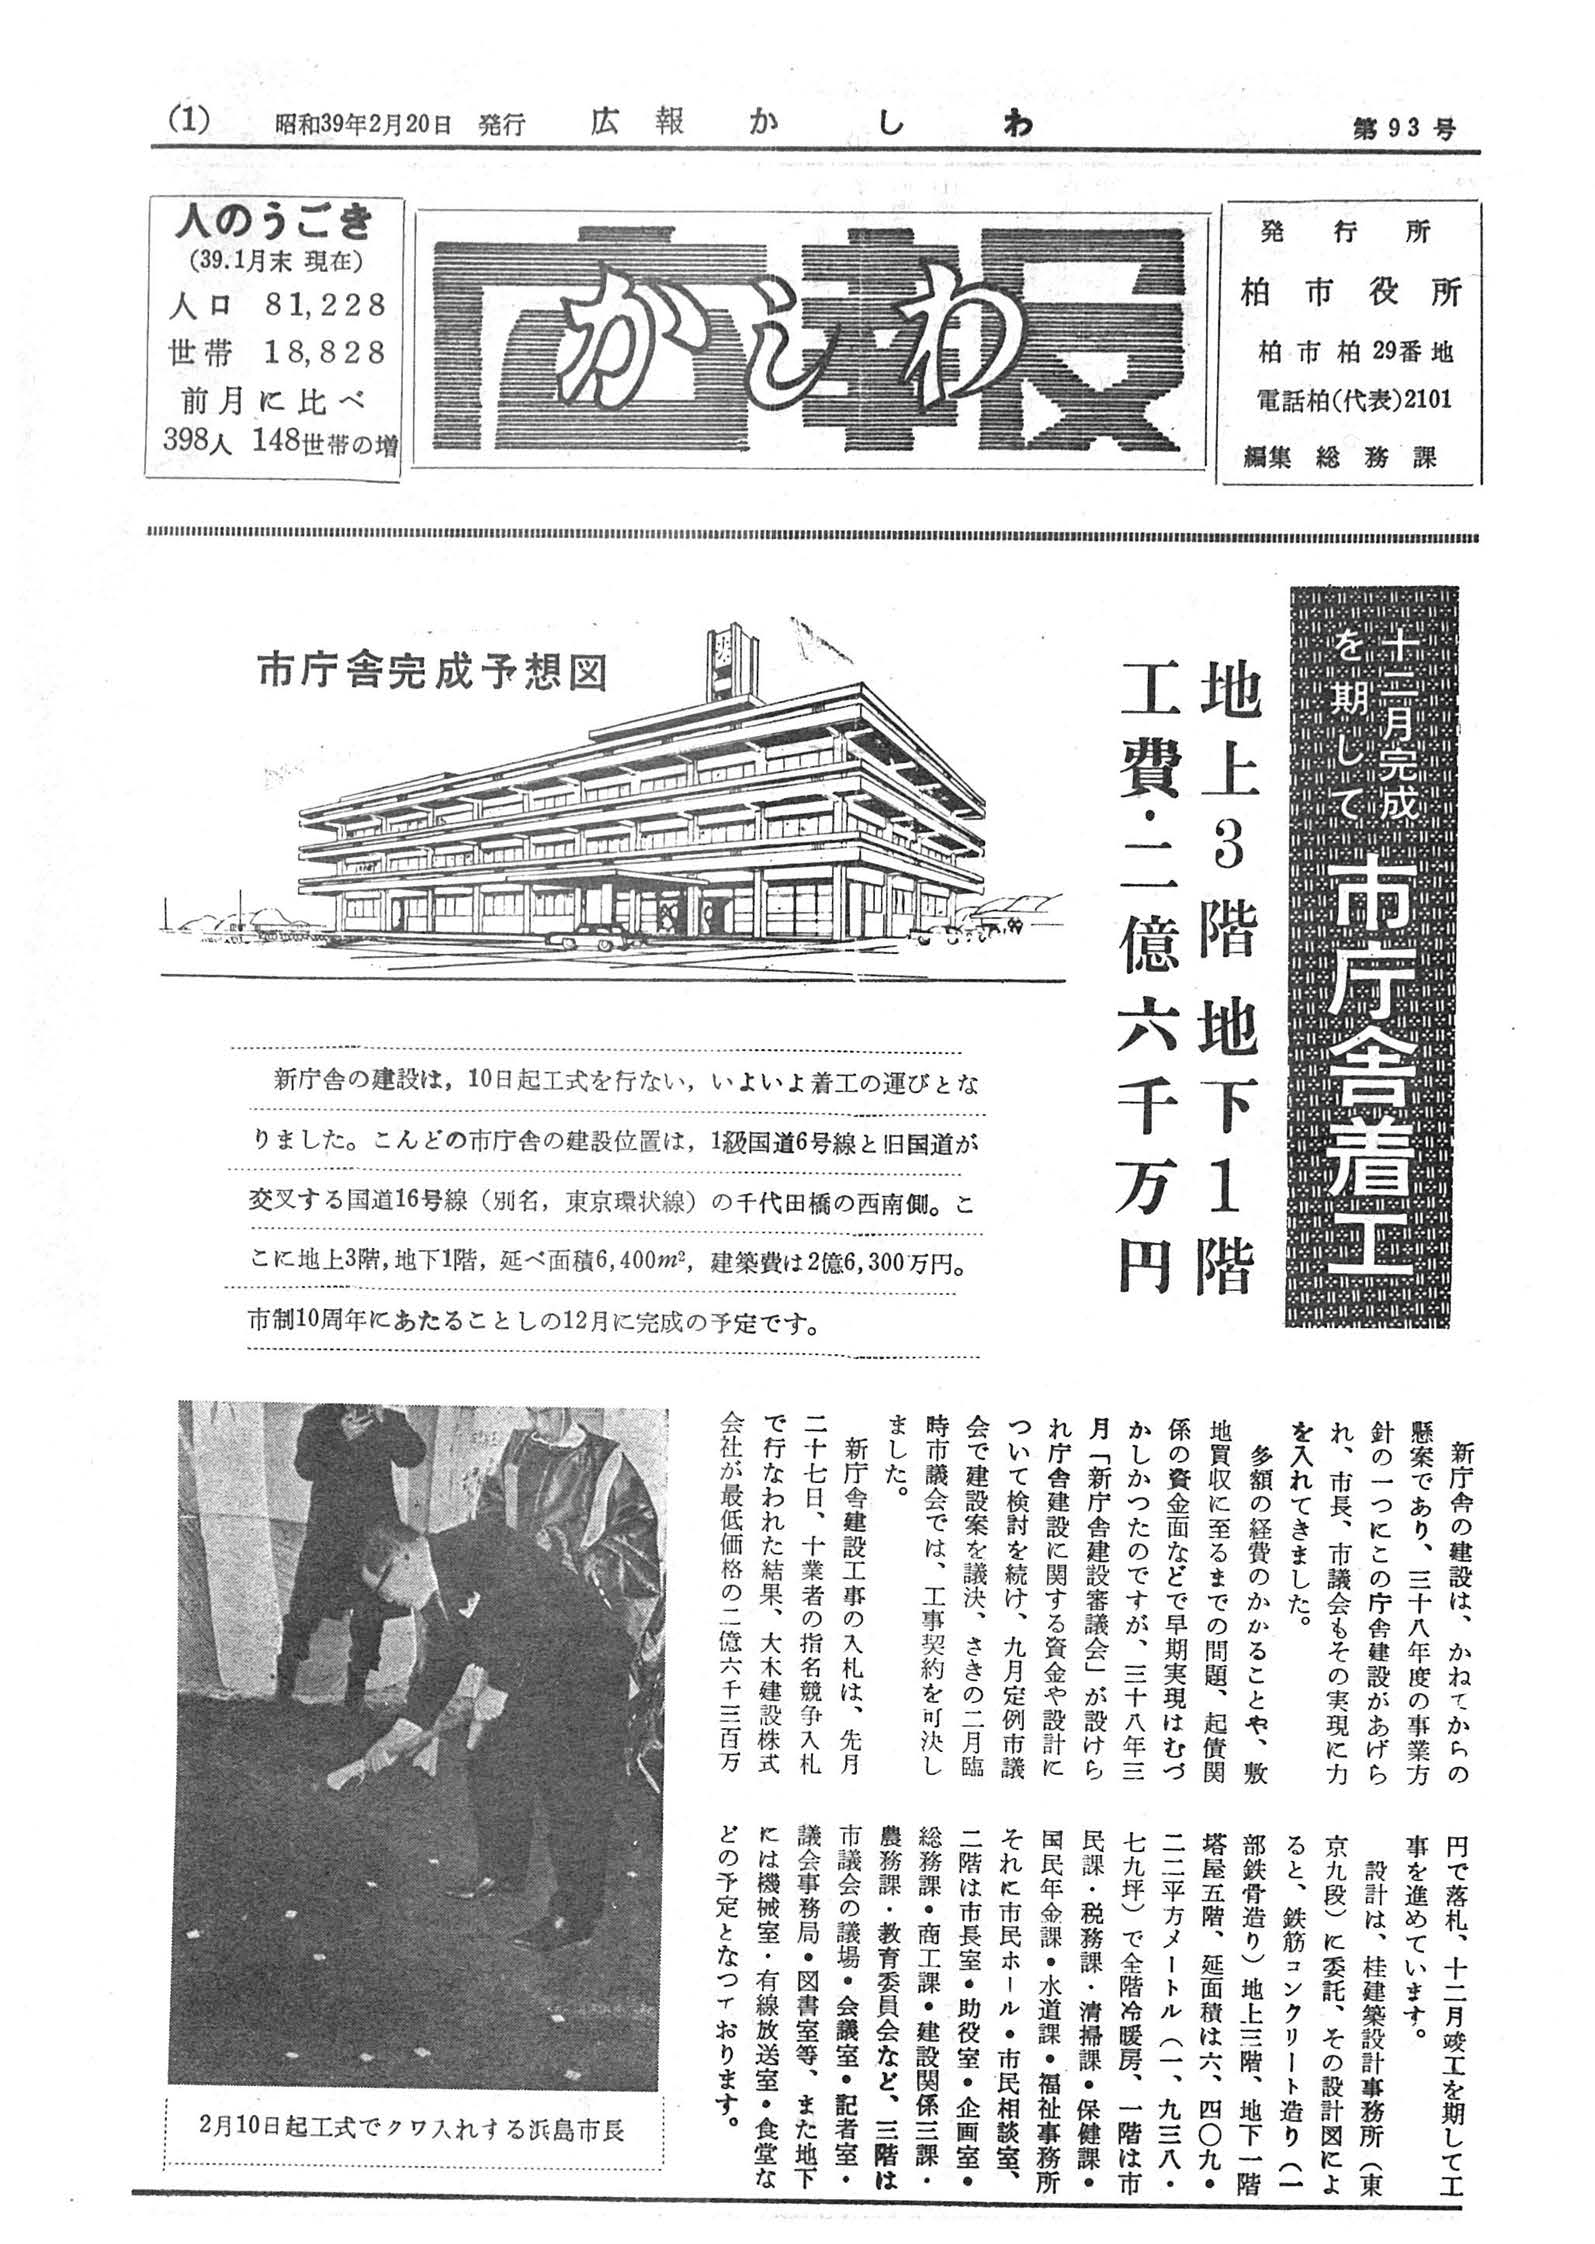 広報かしわ　昭和39年2月20日発行　93号